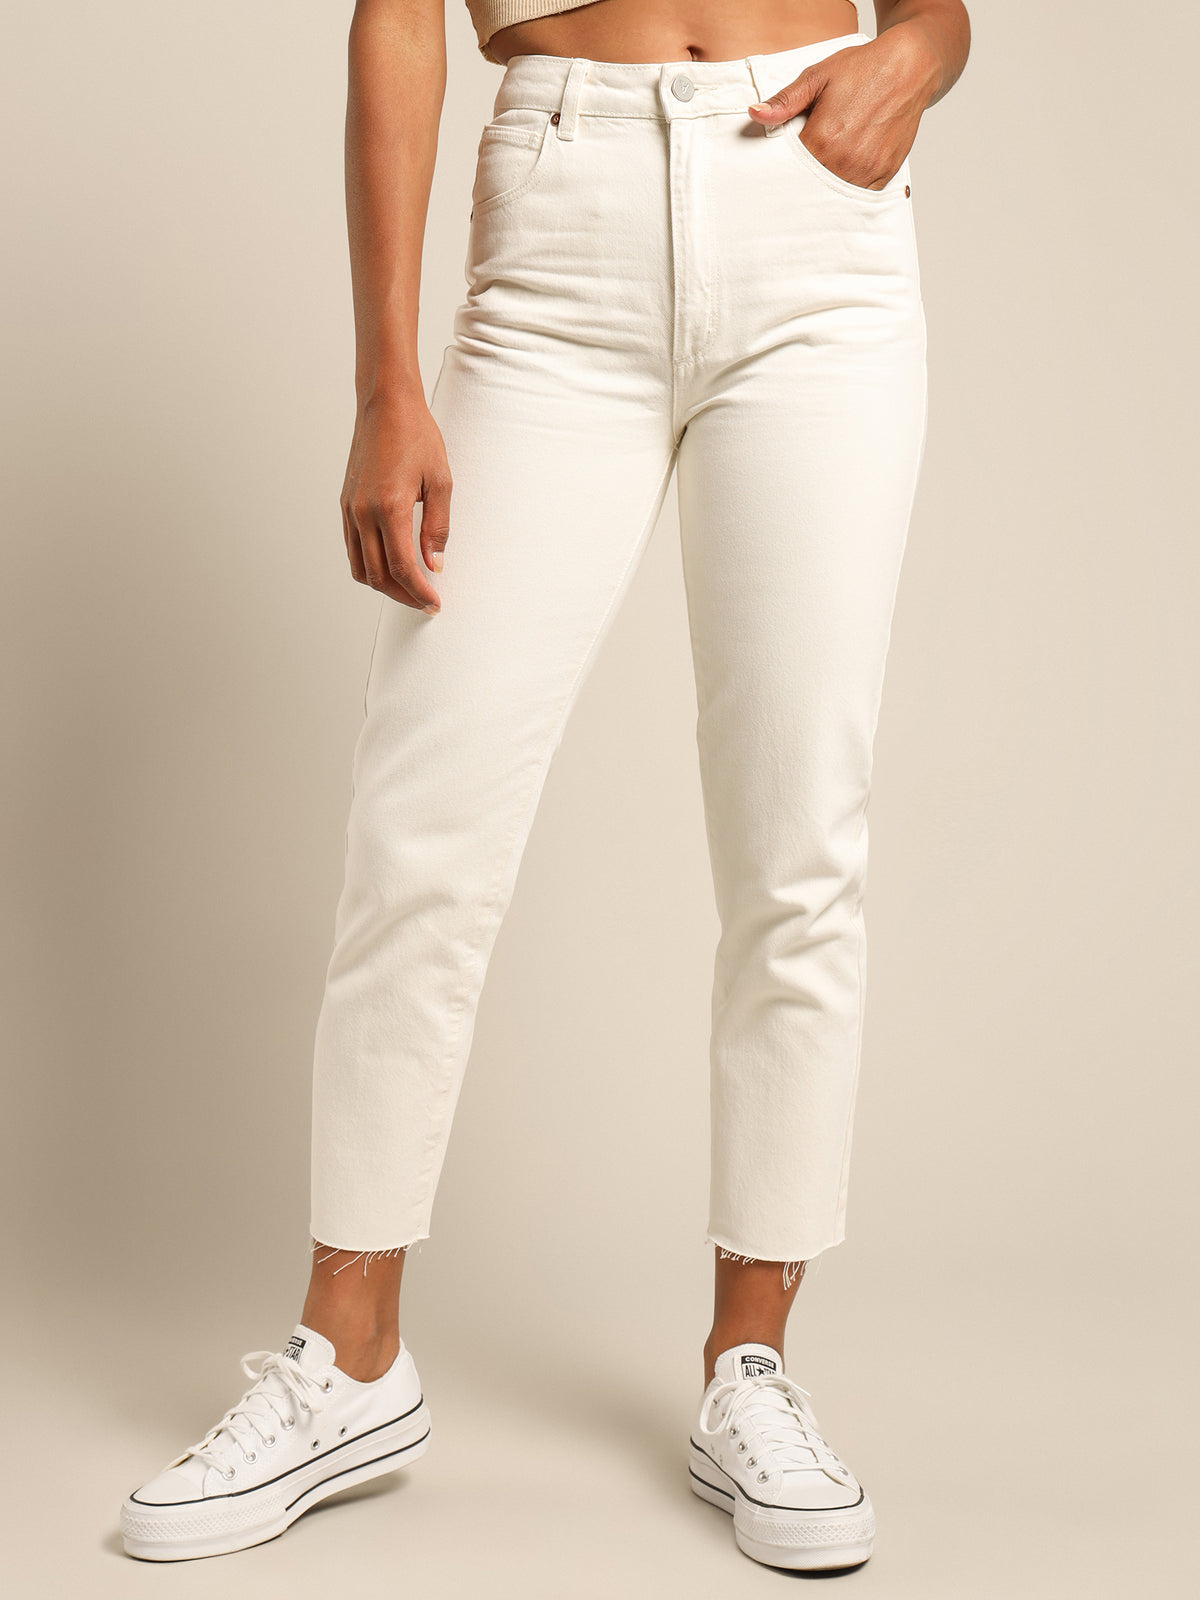 A 94 Petite High Slim Jean in White Fade